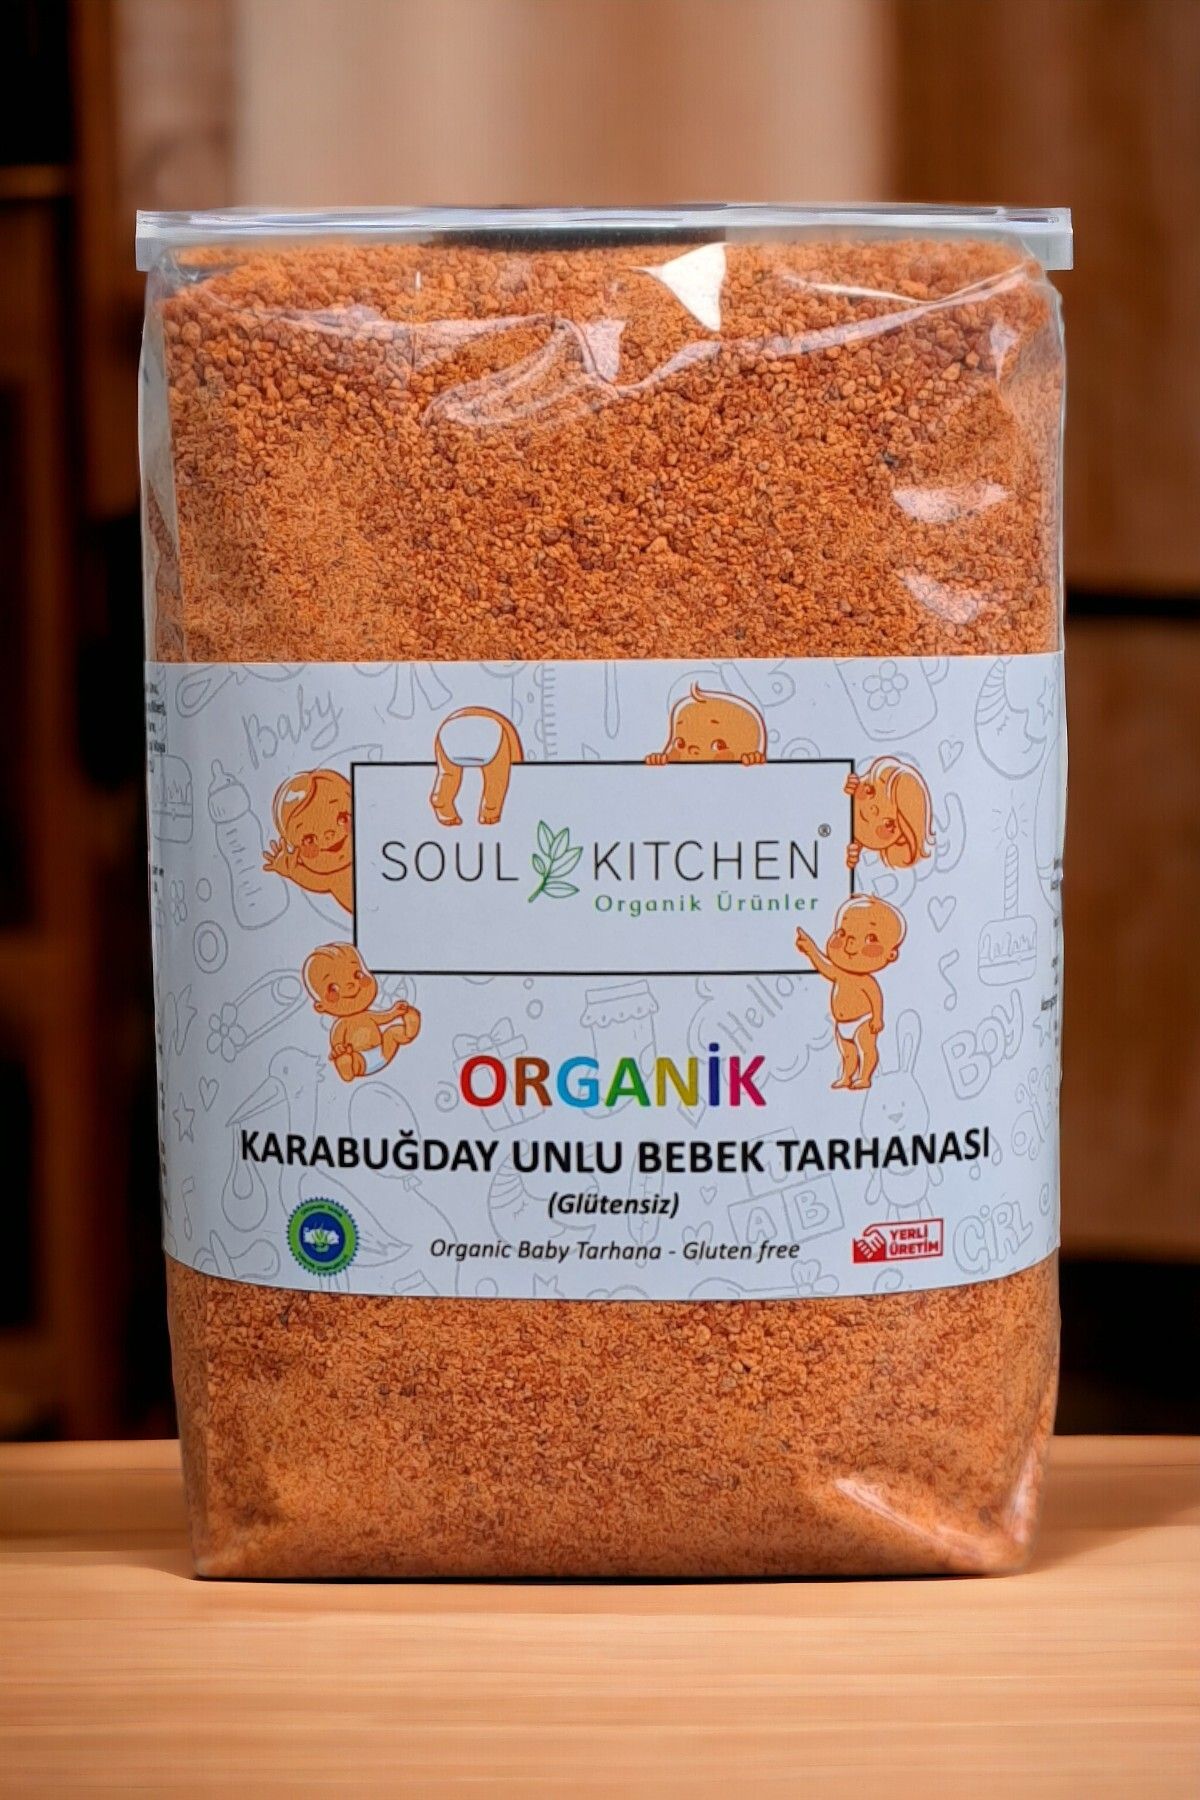 Soul Kitchen Organik Ürünler Organik Karabuğday Unlu Bebek Tarhanası 500gr (Glütensiz)